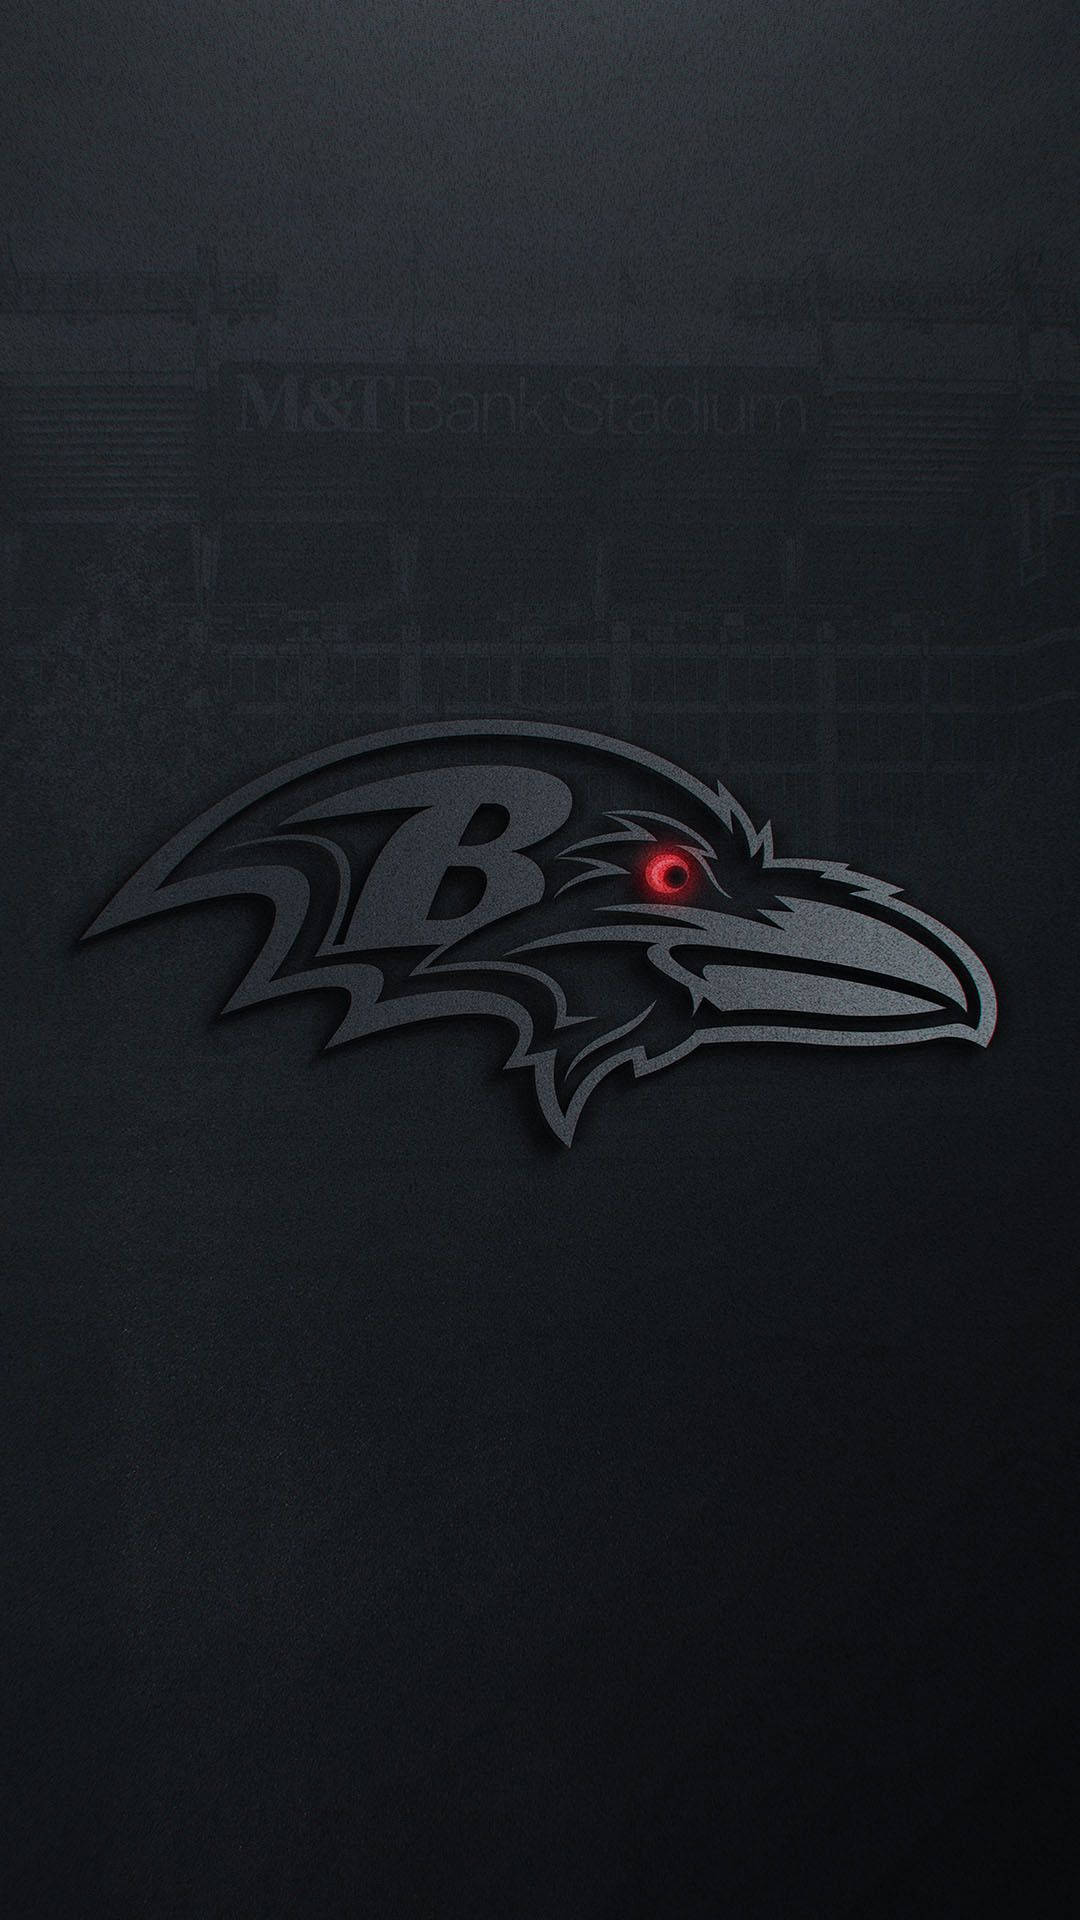 Vis din Baltimore Ravens stolthed med denne tilpassede Iphone! Wallpaper